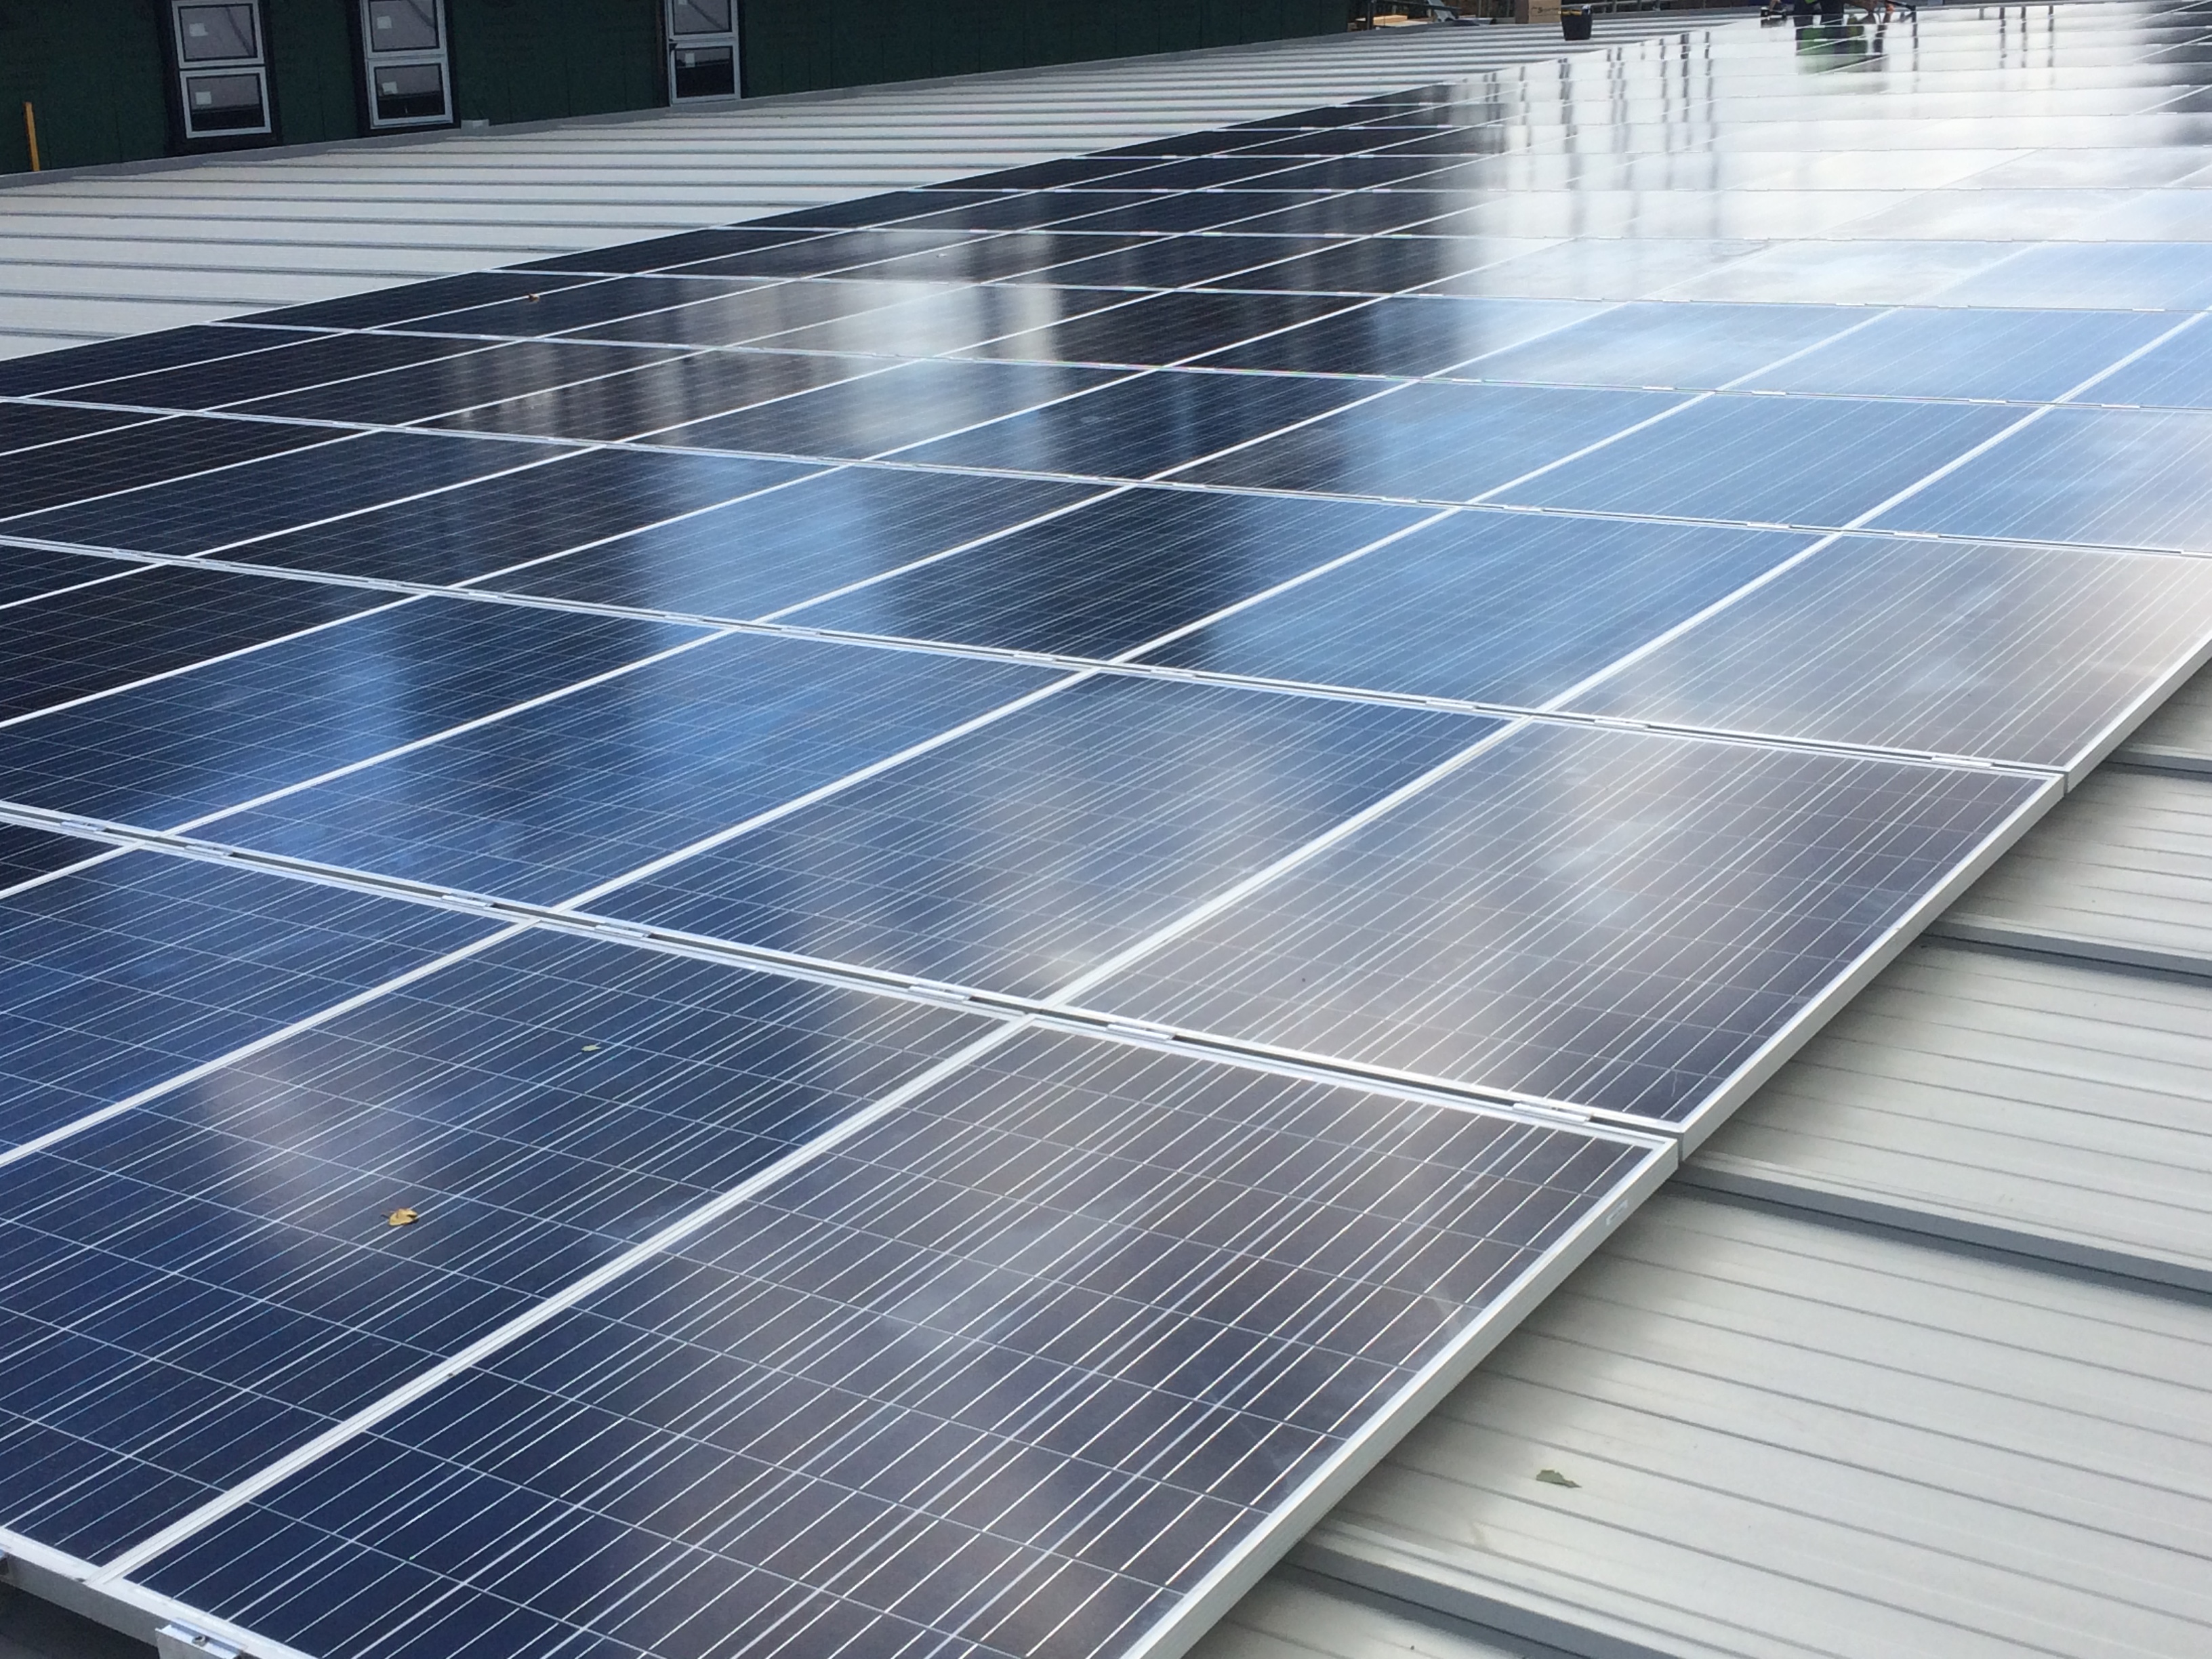 Brynhyfryd Solar PV, Solar PV Swansea, Solar PV Wales, Commercial solar panel installations, solar panel installers, pv solar installatiions